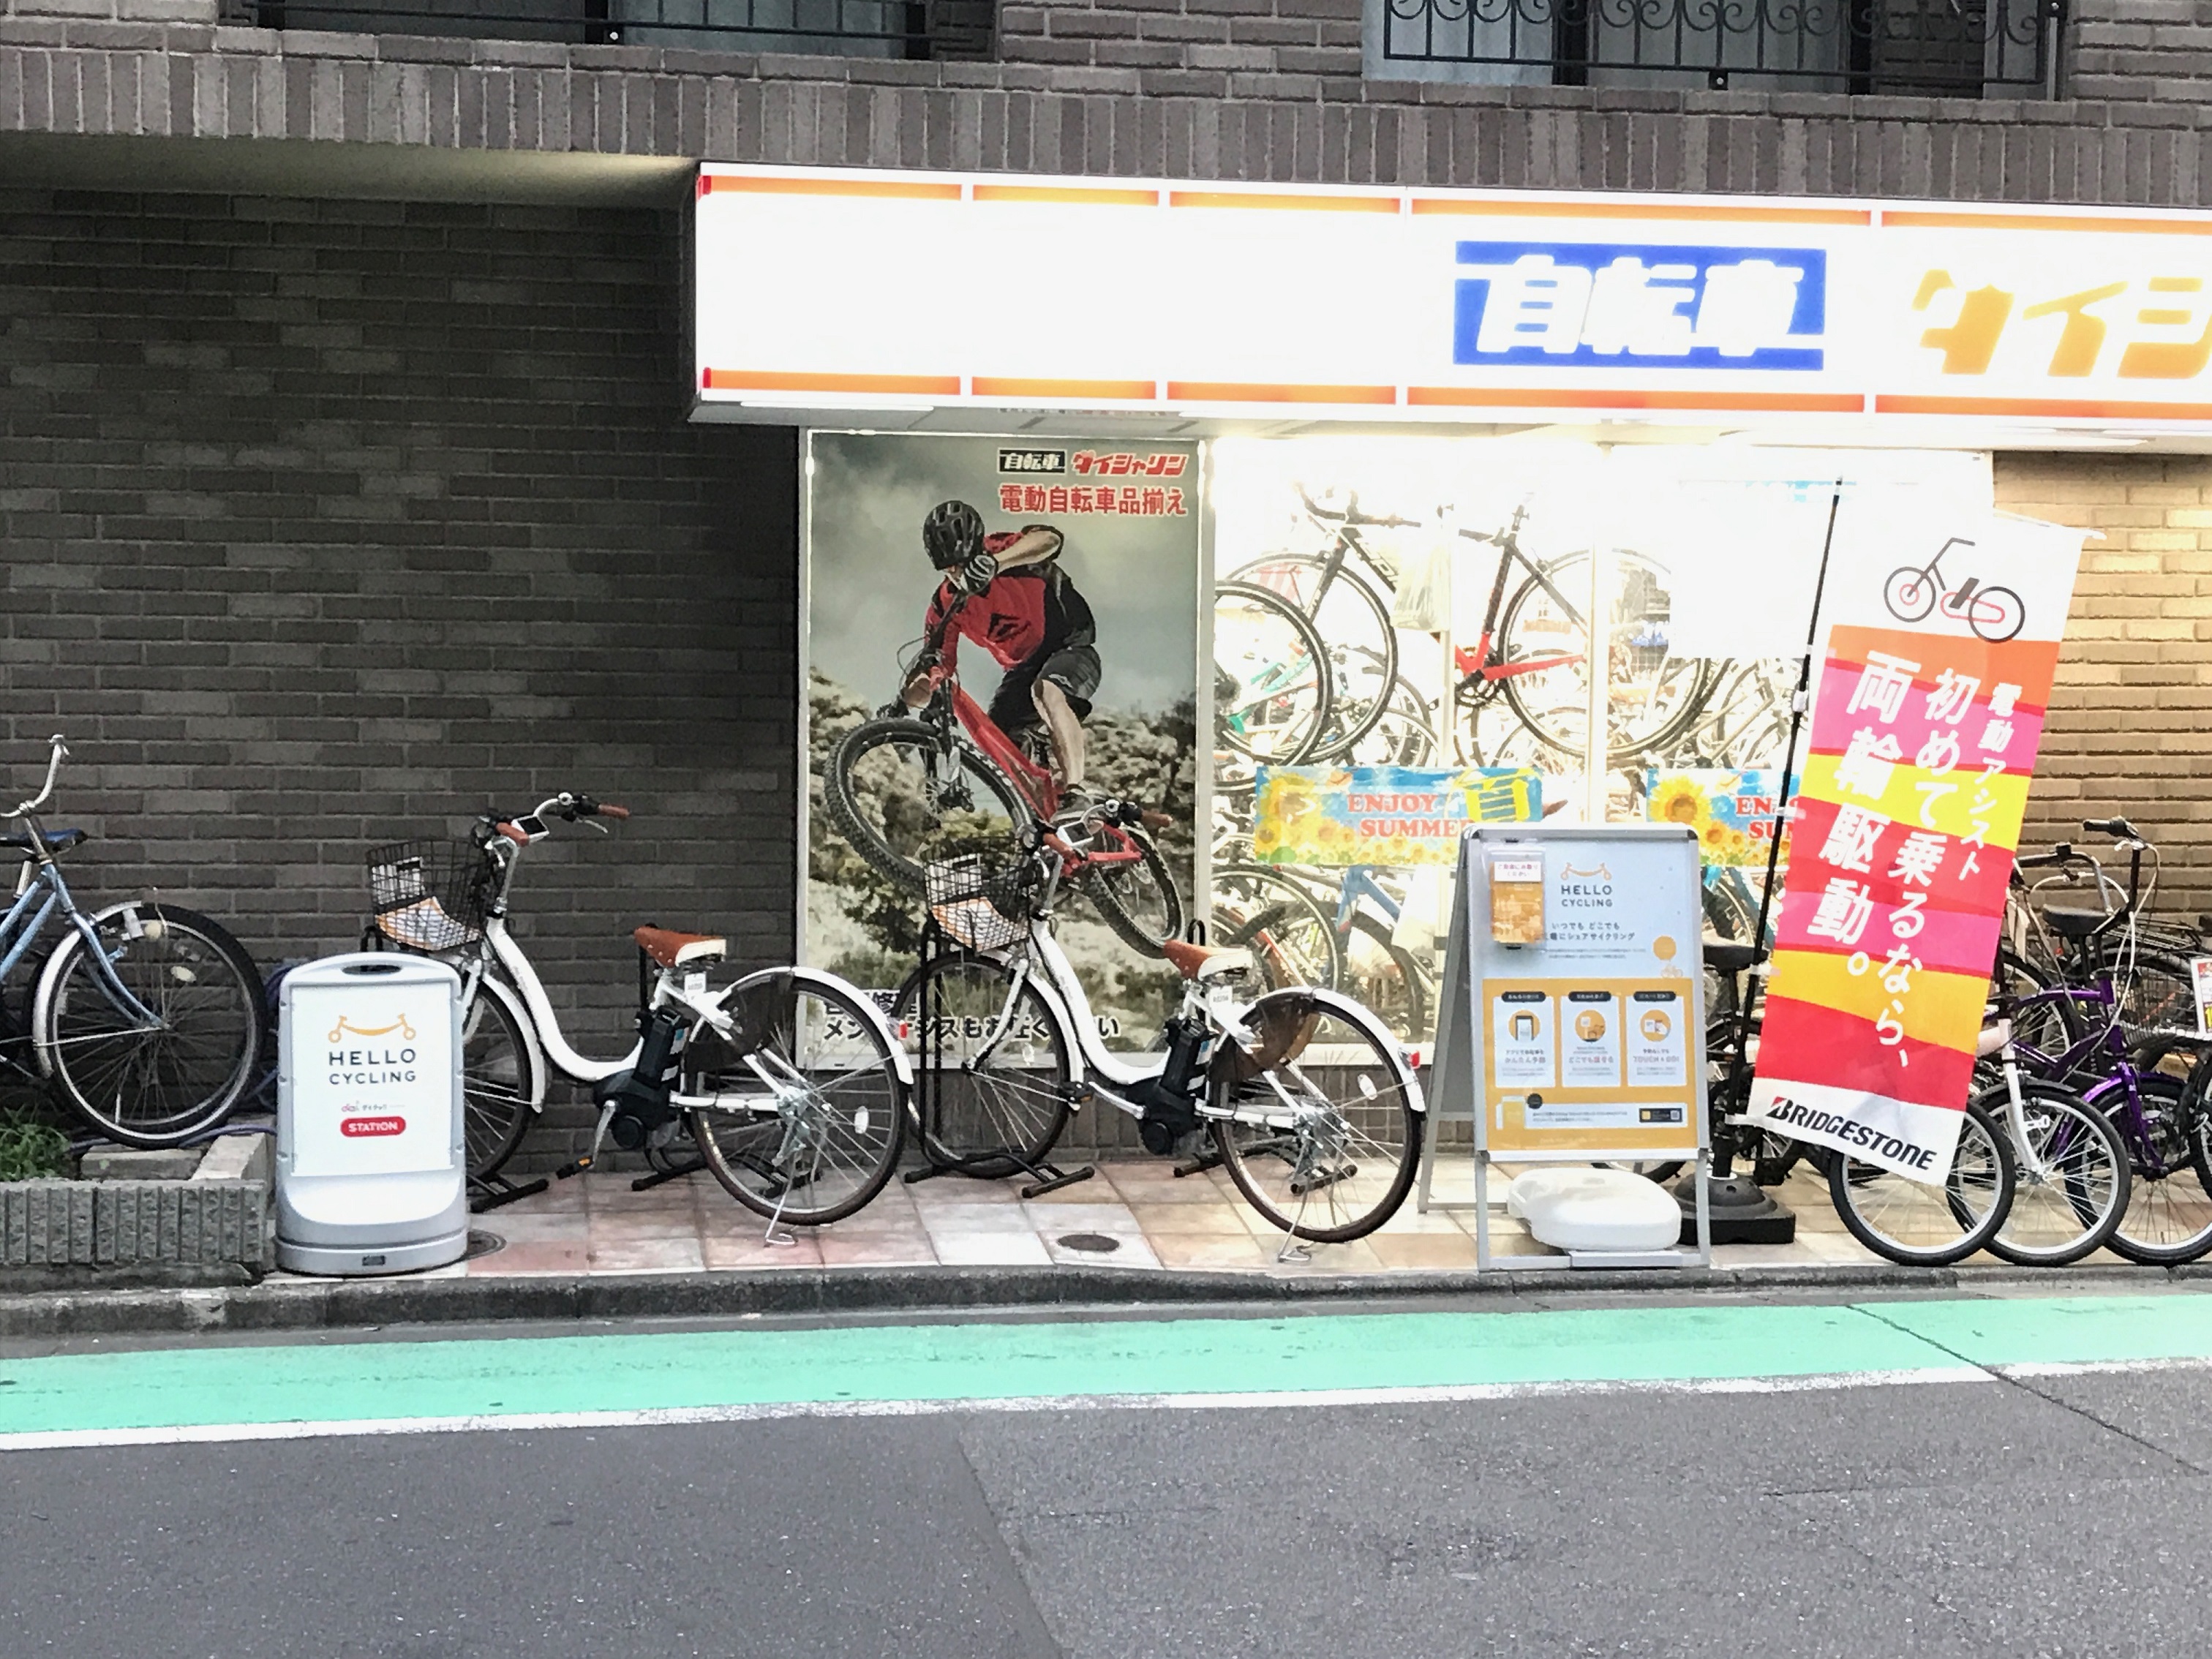 ダイシャリン 江戸川橋駅店 (HELLO CYCLING ポート)の画像1